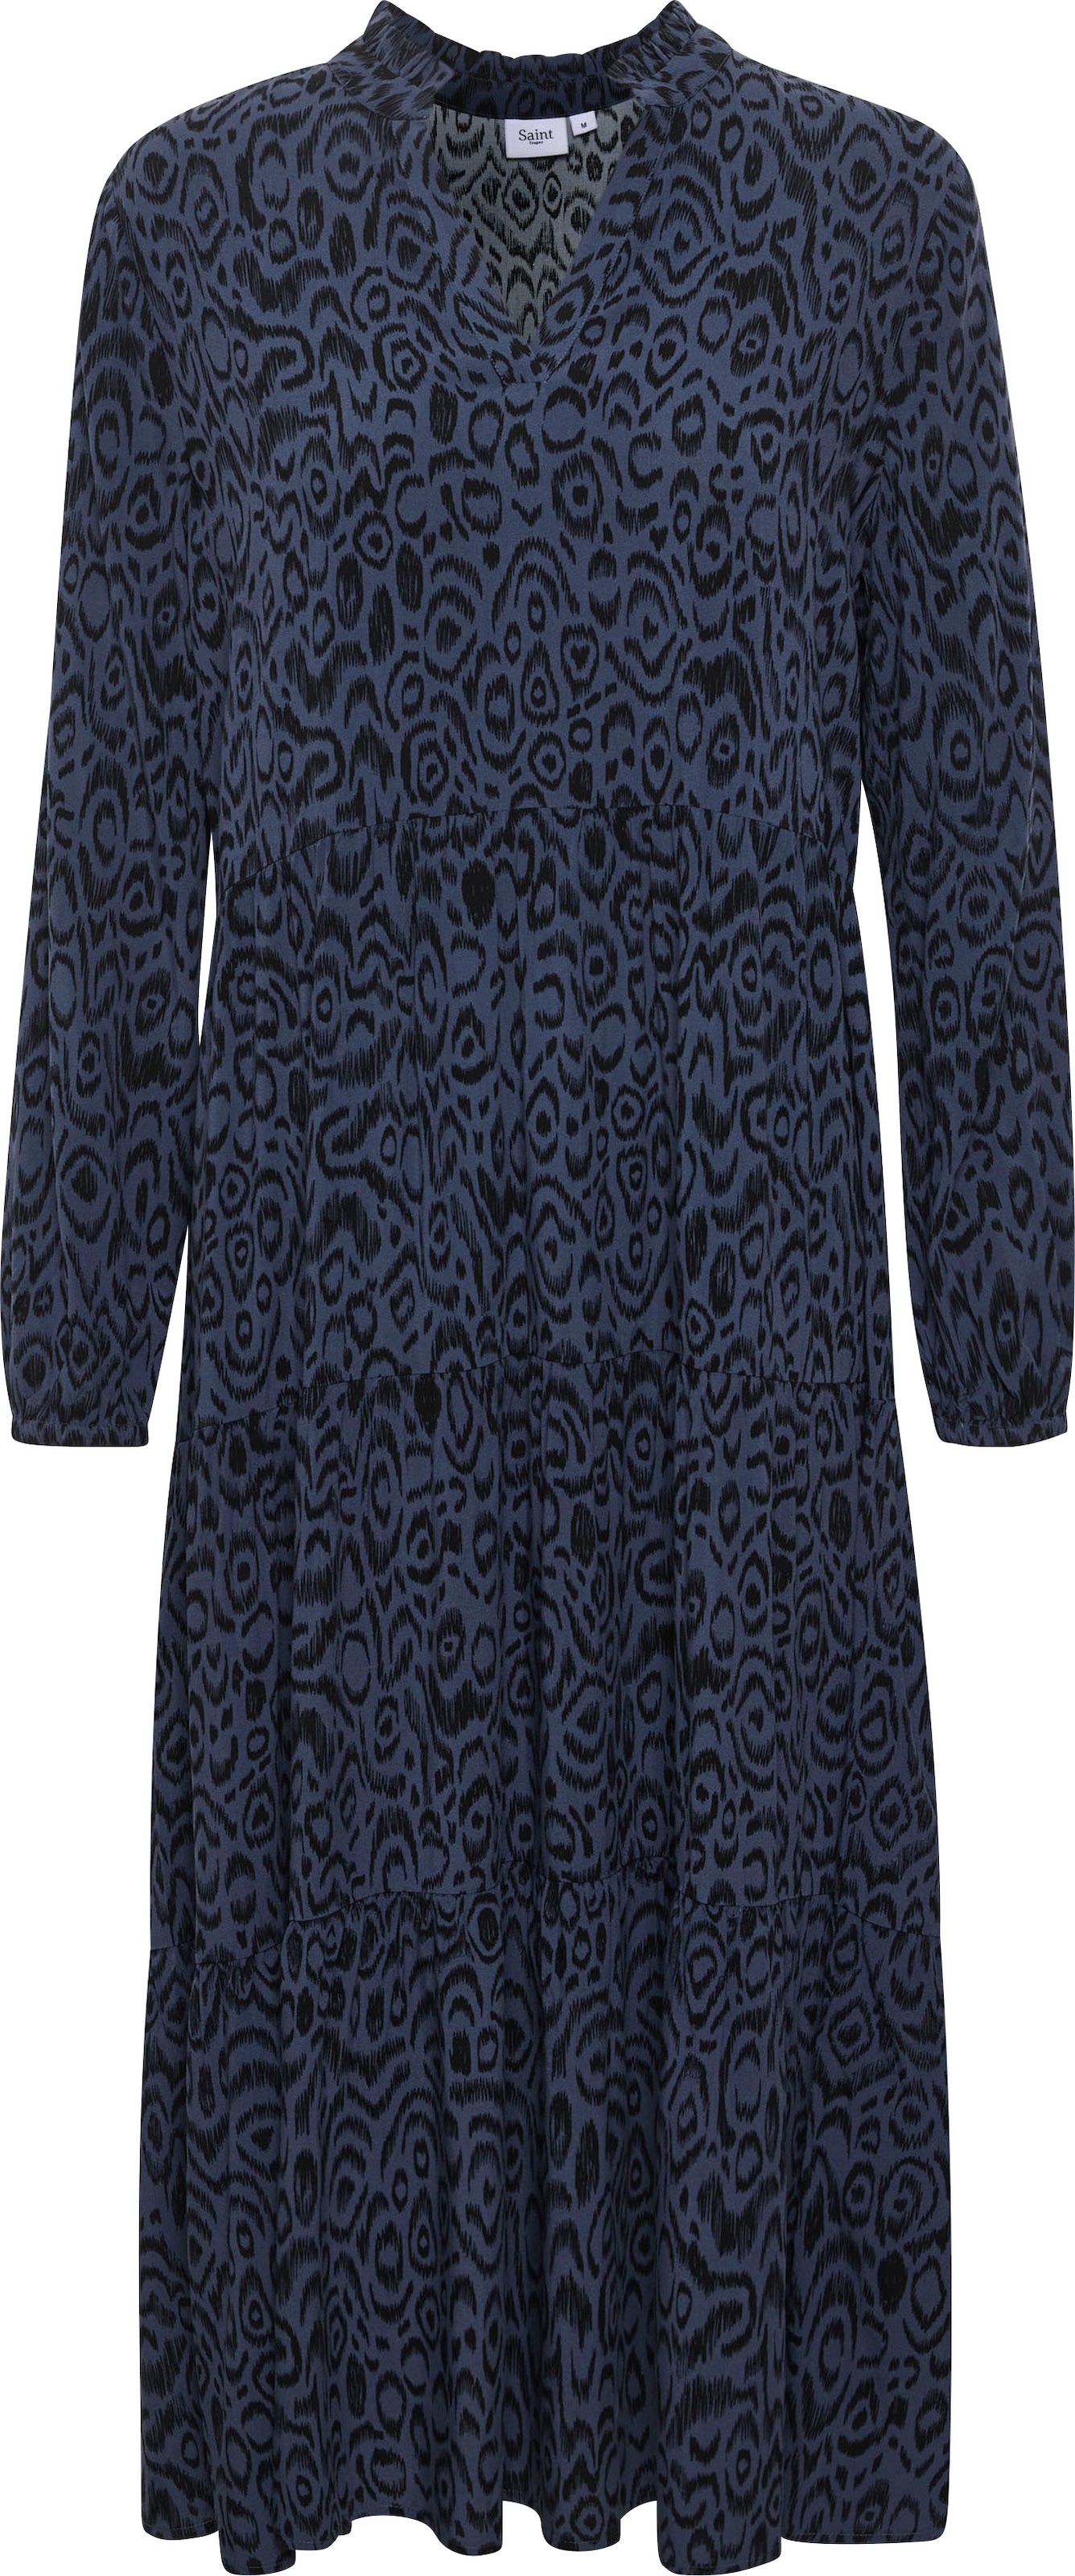 Saint Tropez Sommerkleid Maxi im Volant mit Online-Shop bestellen »EdaSZ Dress«